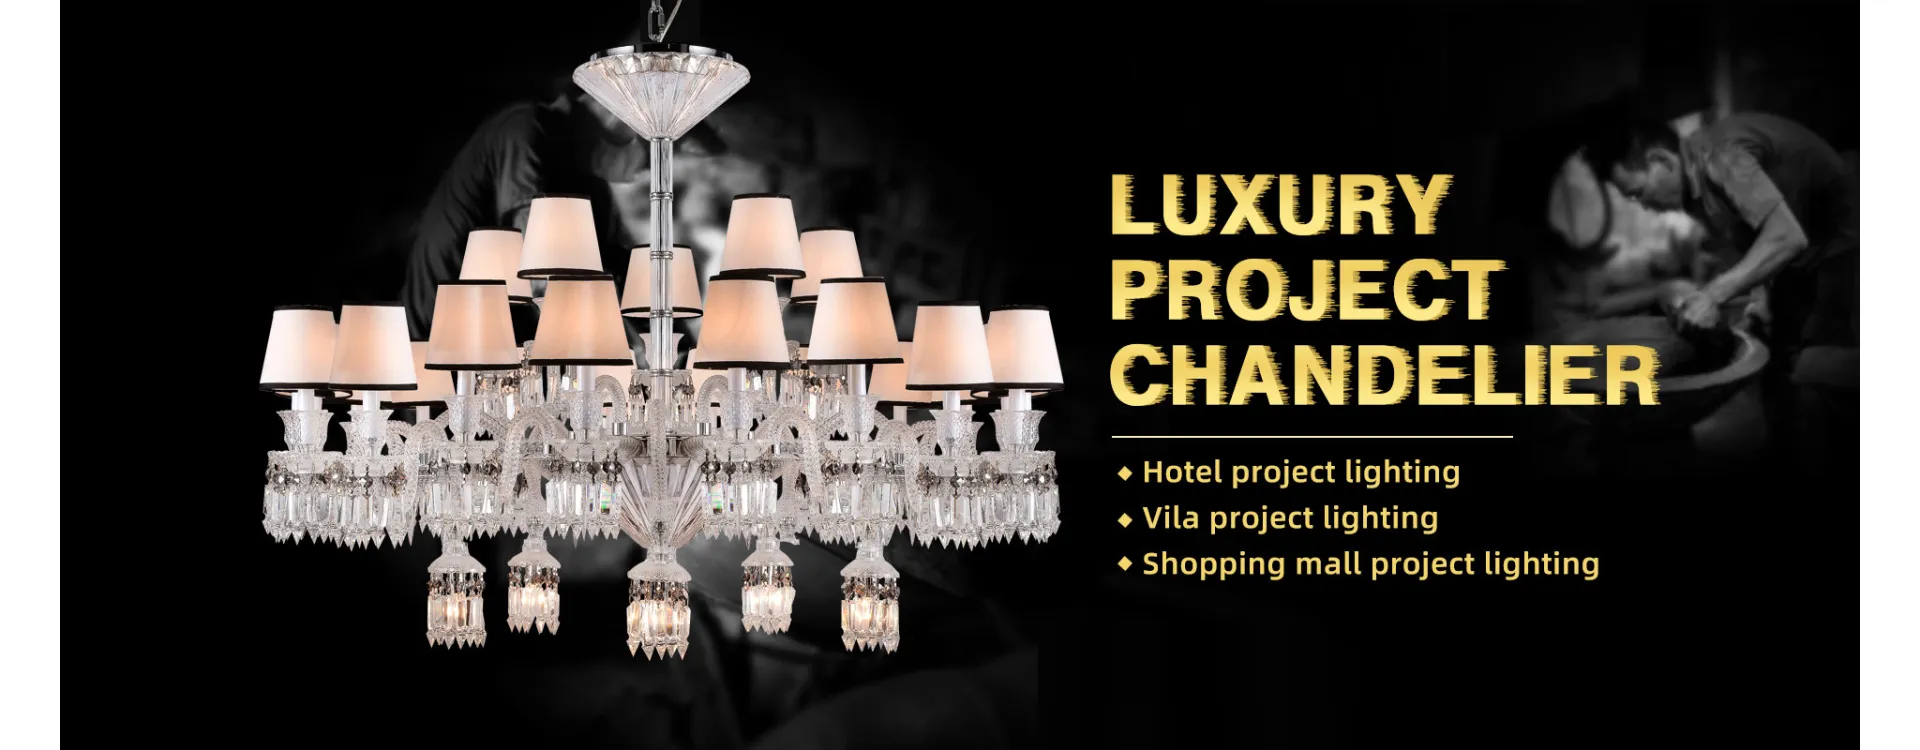 Luxury Project Chandelier